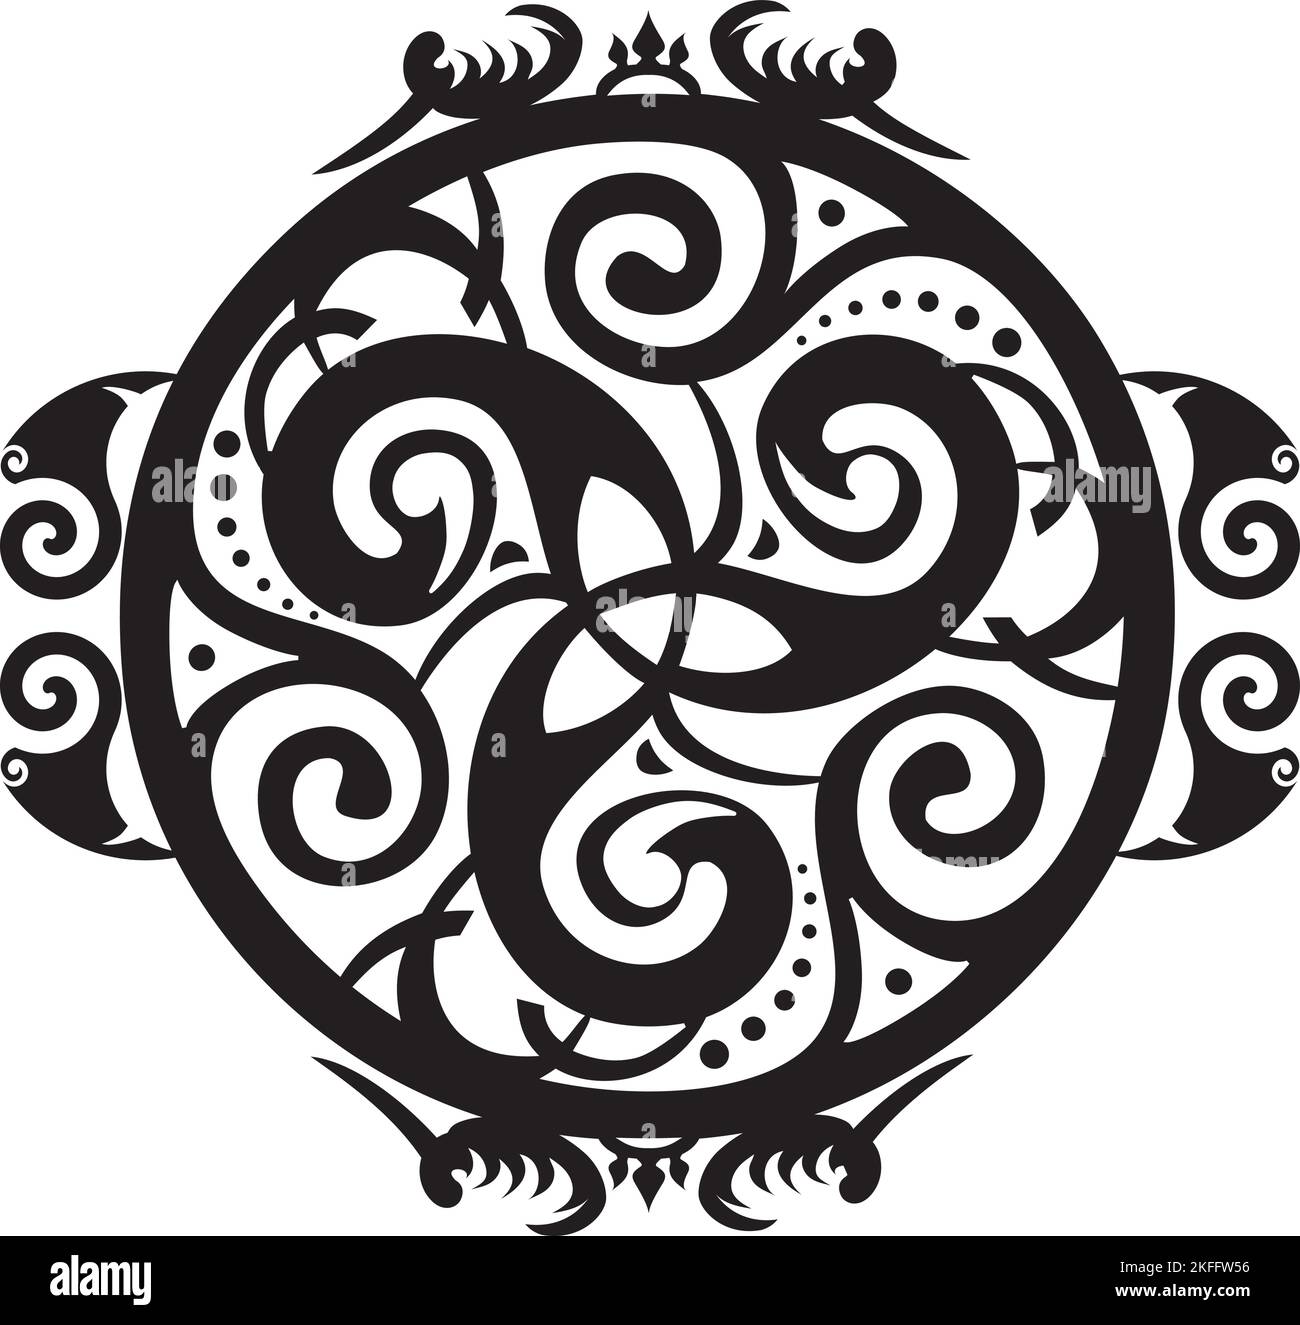 Keltisches Symbol - Keltischer Knoten und Triskelion Kreis - Trinität - Heilige Geometrie - Energie Stock Vektor